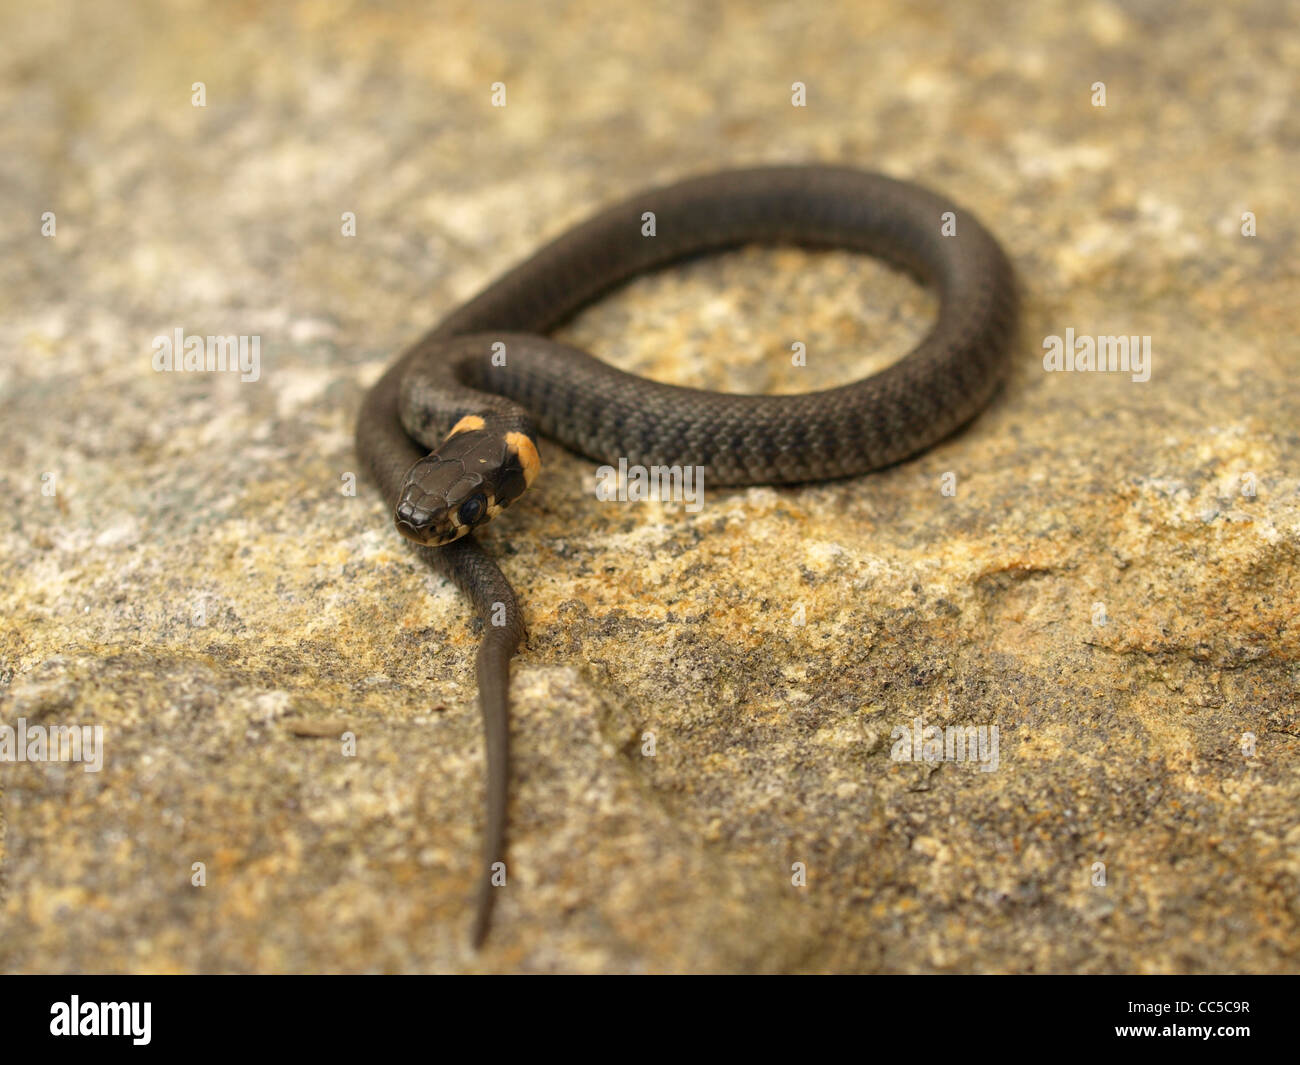 El césped joven serpiente sobre una piedra / Natrix natrix / junge Ringelnatter auf einem Stein Foto de stock